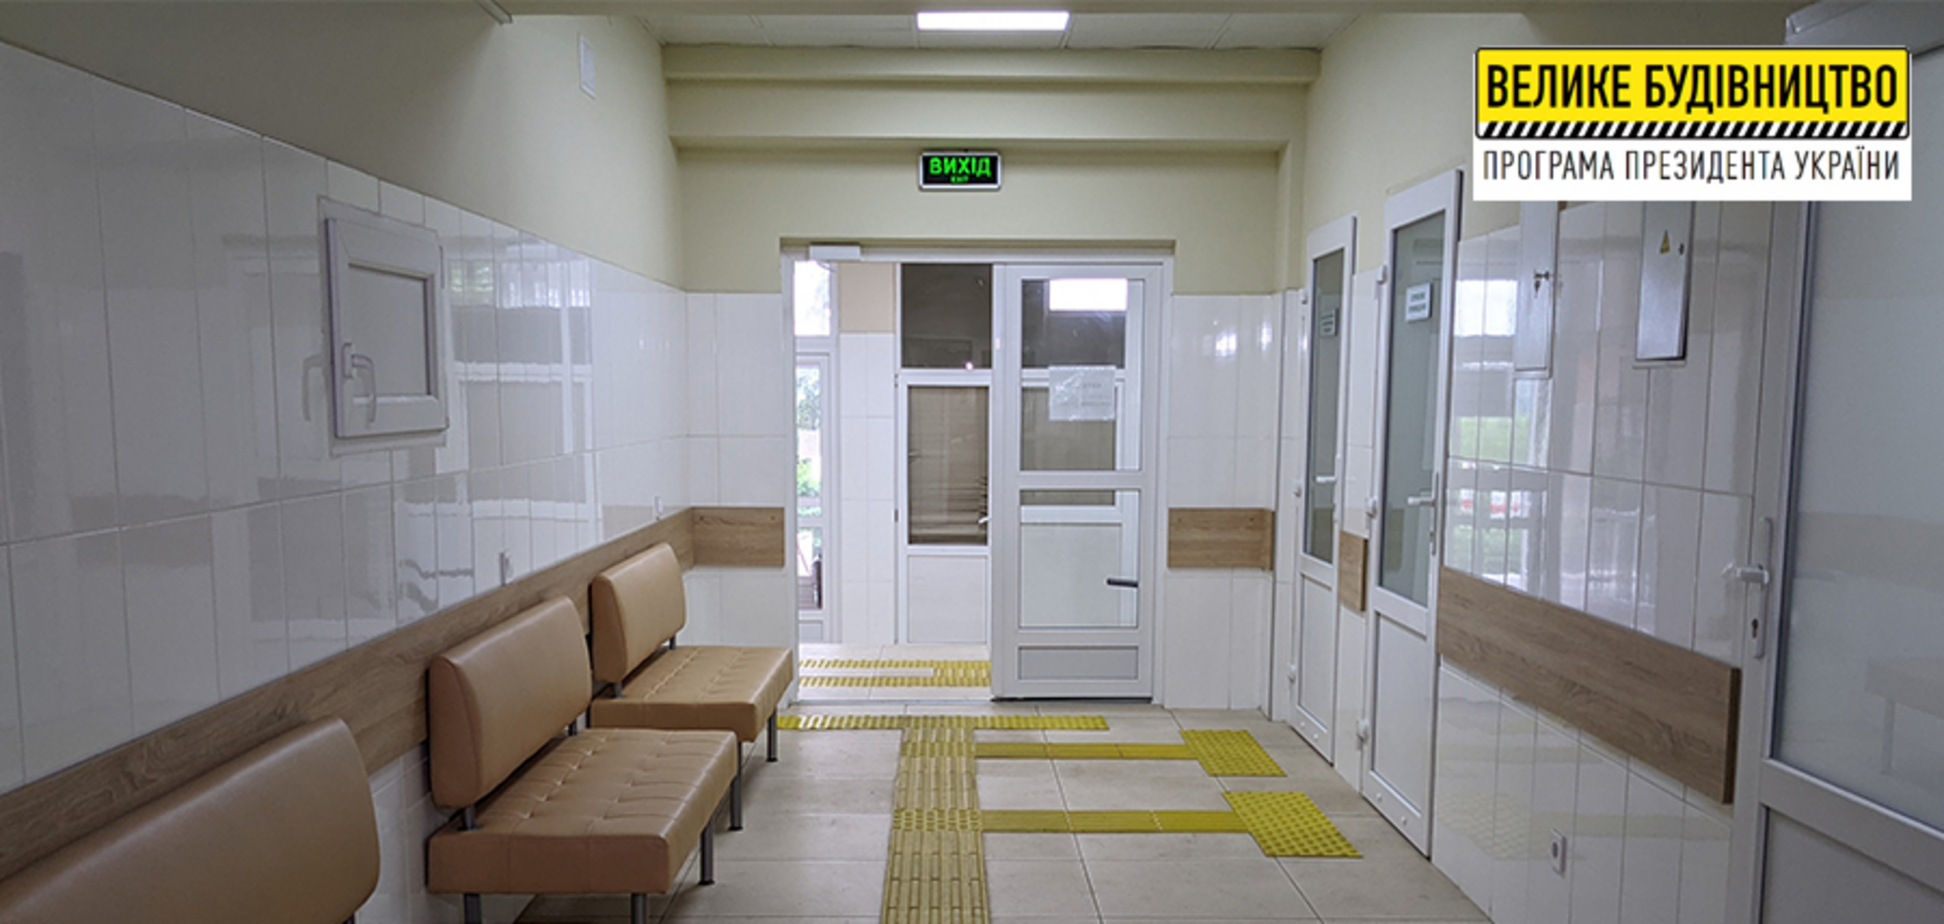 В Купянской больнице завершилась реконструкция приемного отделения экстренной медицинской помощи